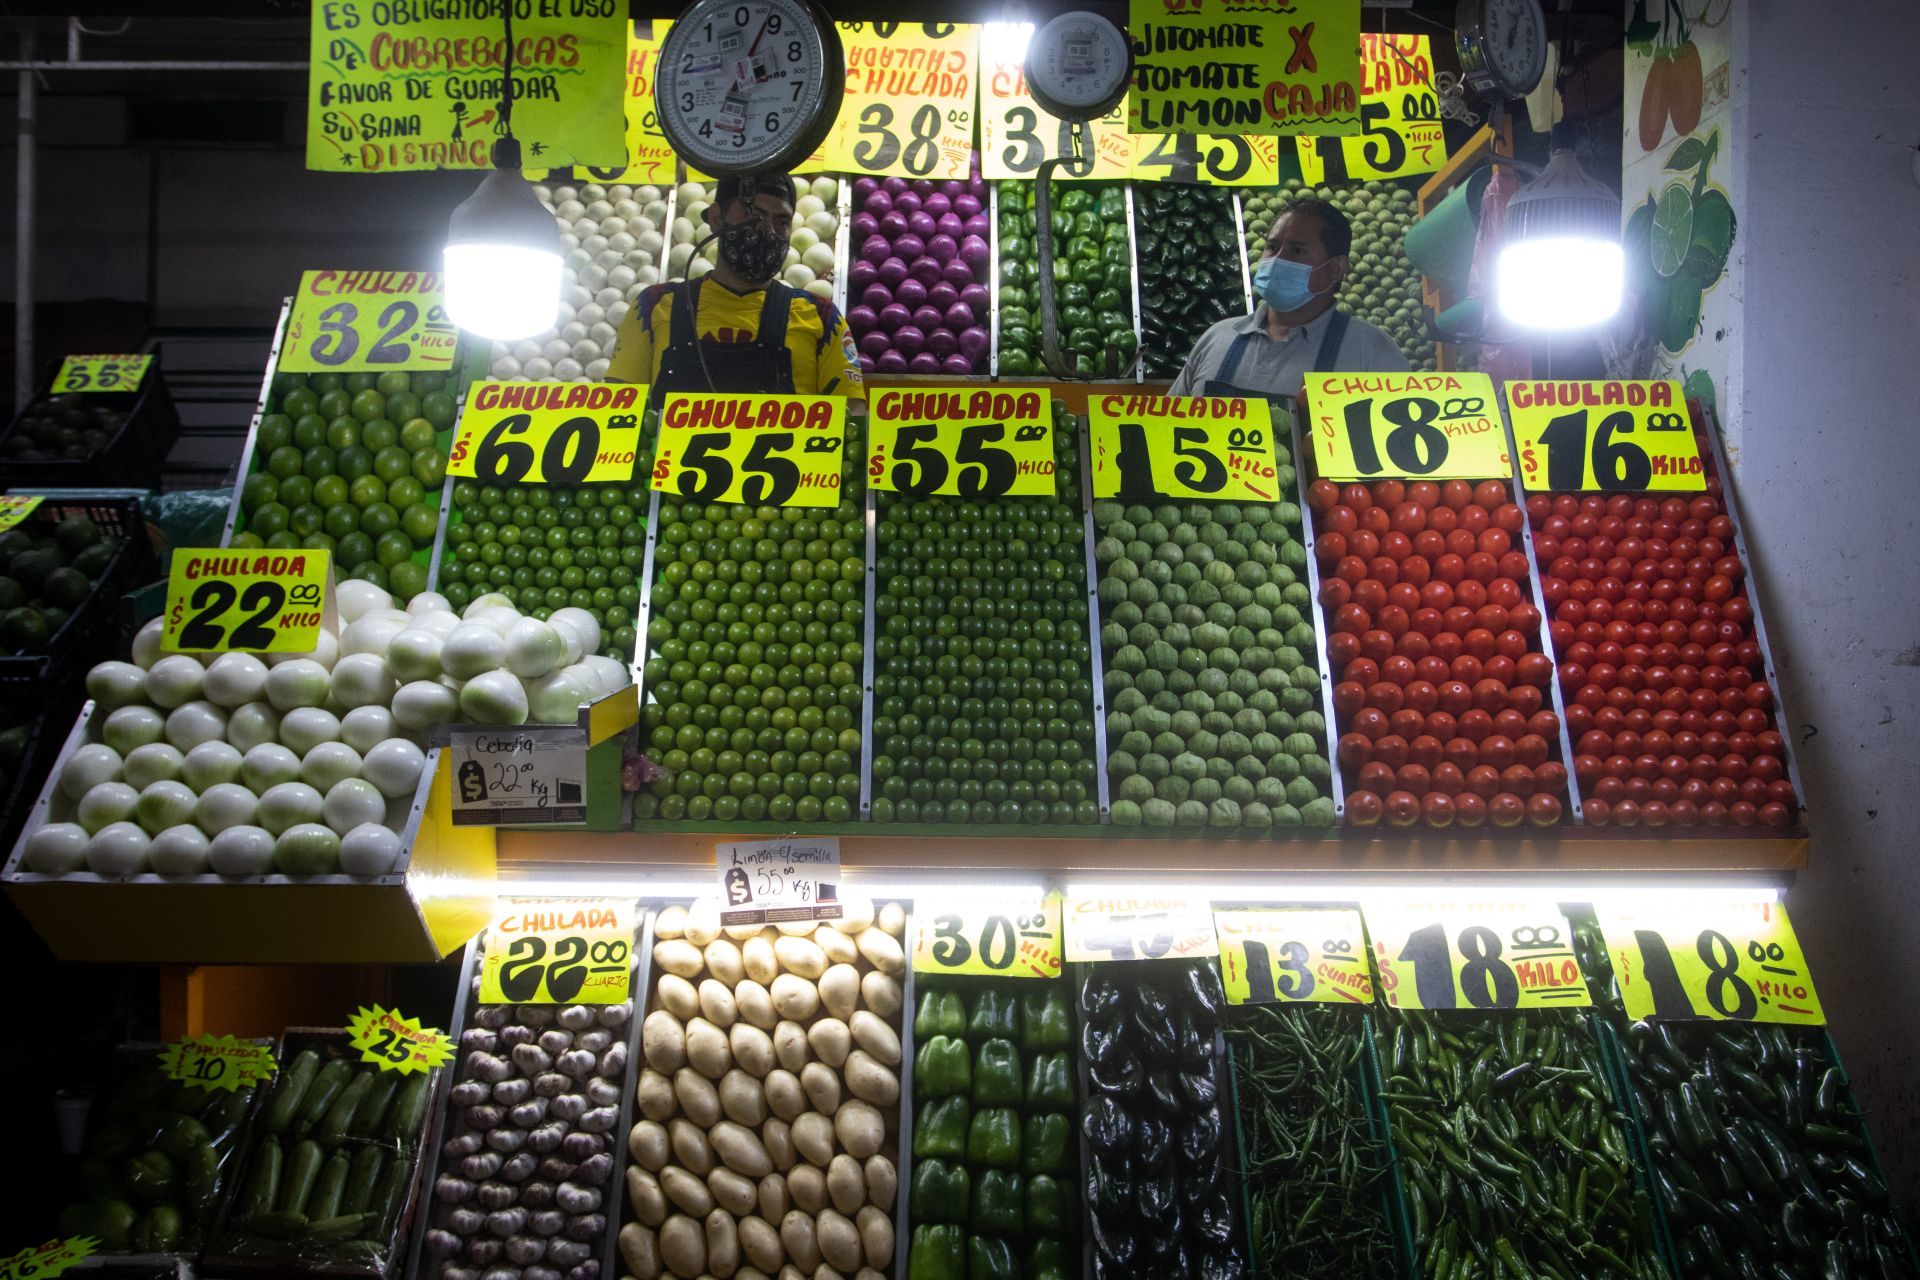 Los precios por kilogramo de la cebolla de bola, papa y limón incrementaron su costo al iniciar el año debido a la inflación y altos costos de materias primas, así como energéticos.
FOTO: GRACIELA LÓPEZ /CUARTOSCURO.COM